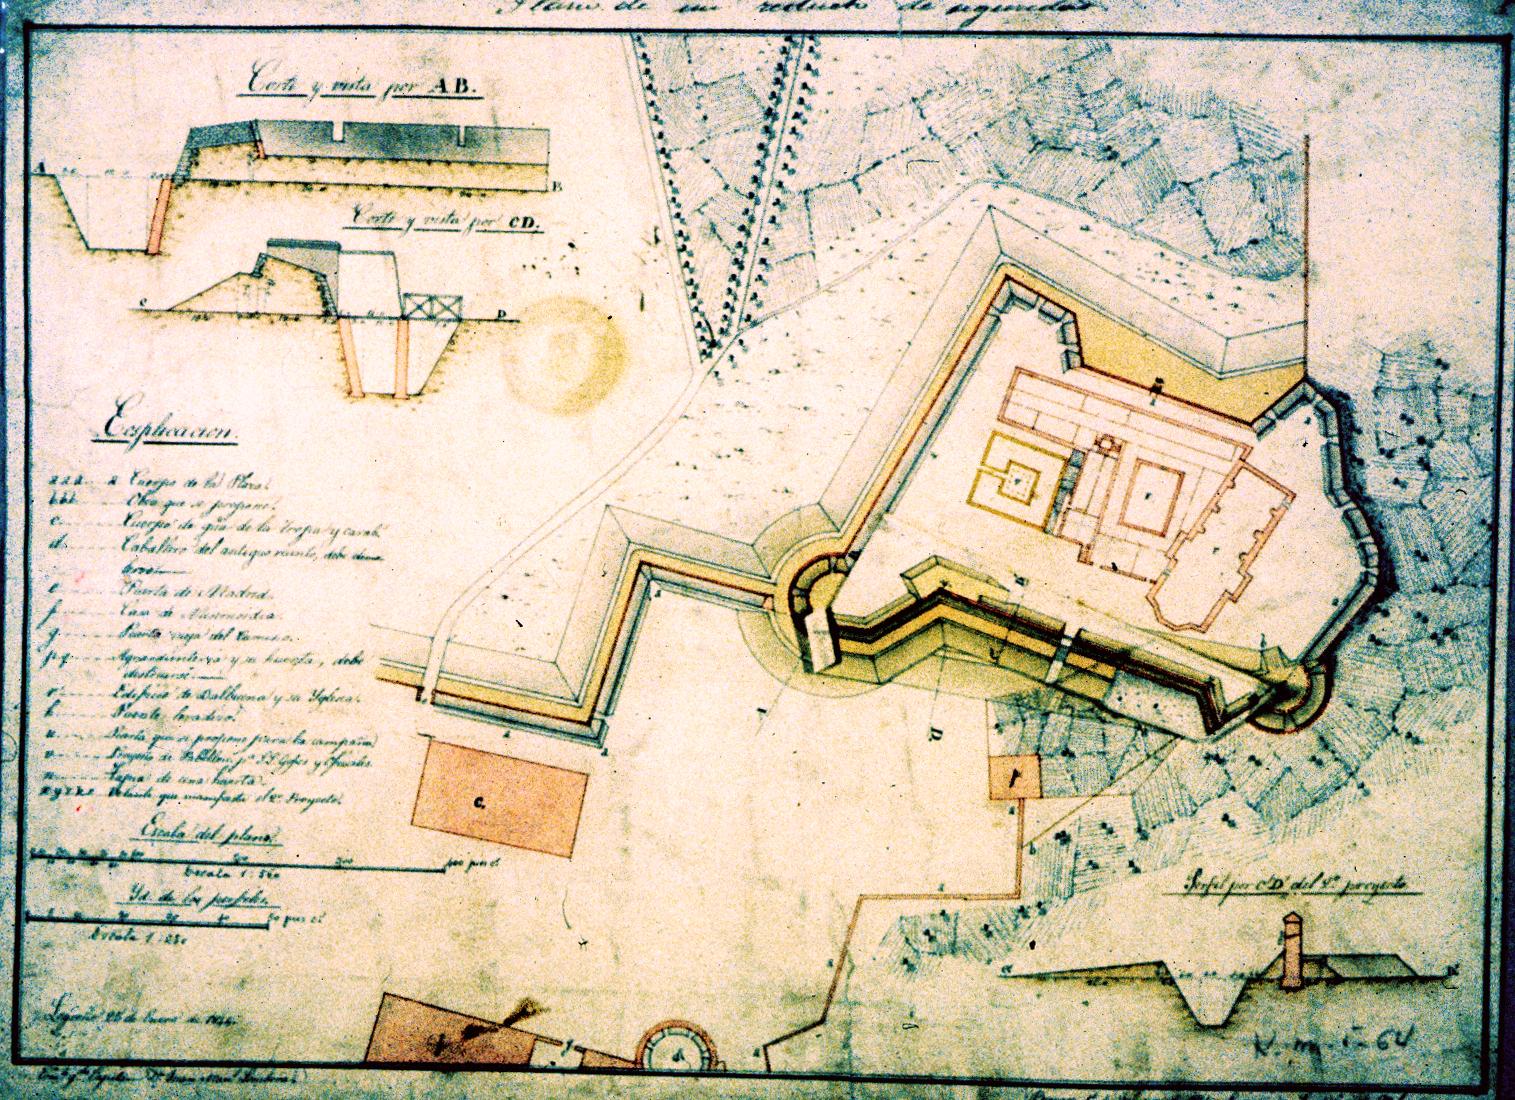 Plano Proyecto de reducto de seguridad en el cuartel de Valbuena. 1874